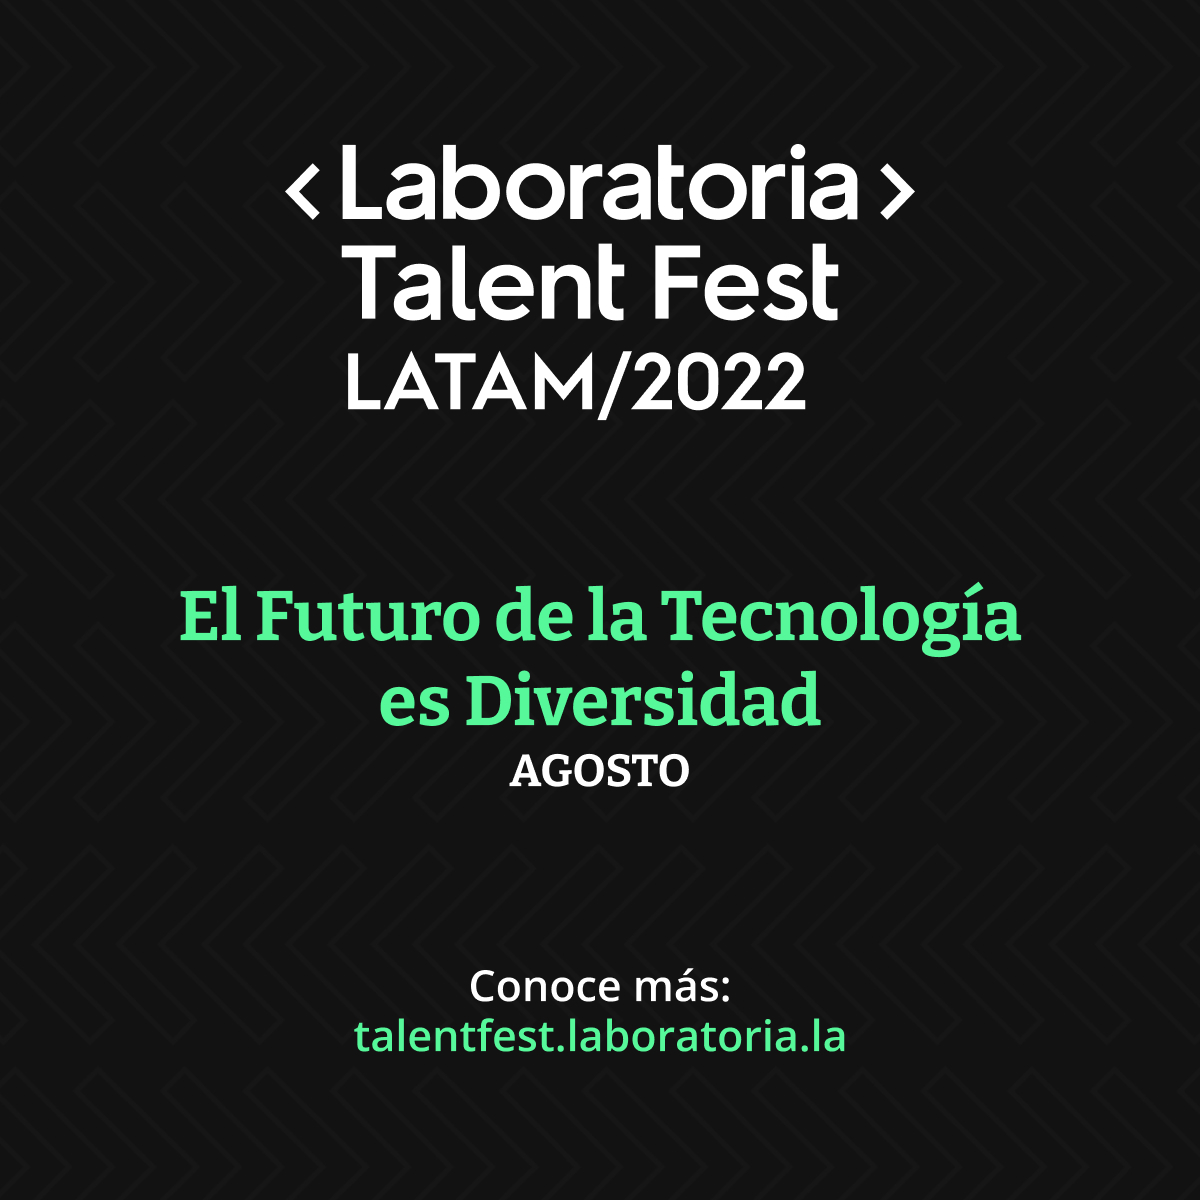 Talent Fest Latinoamérica 2022